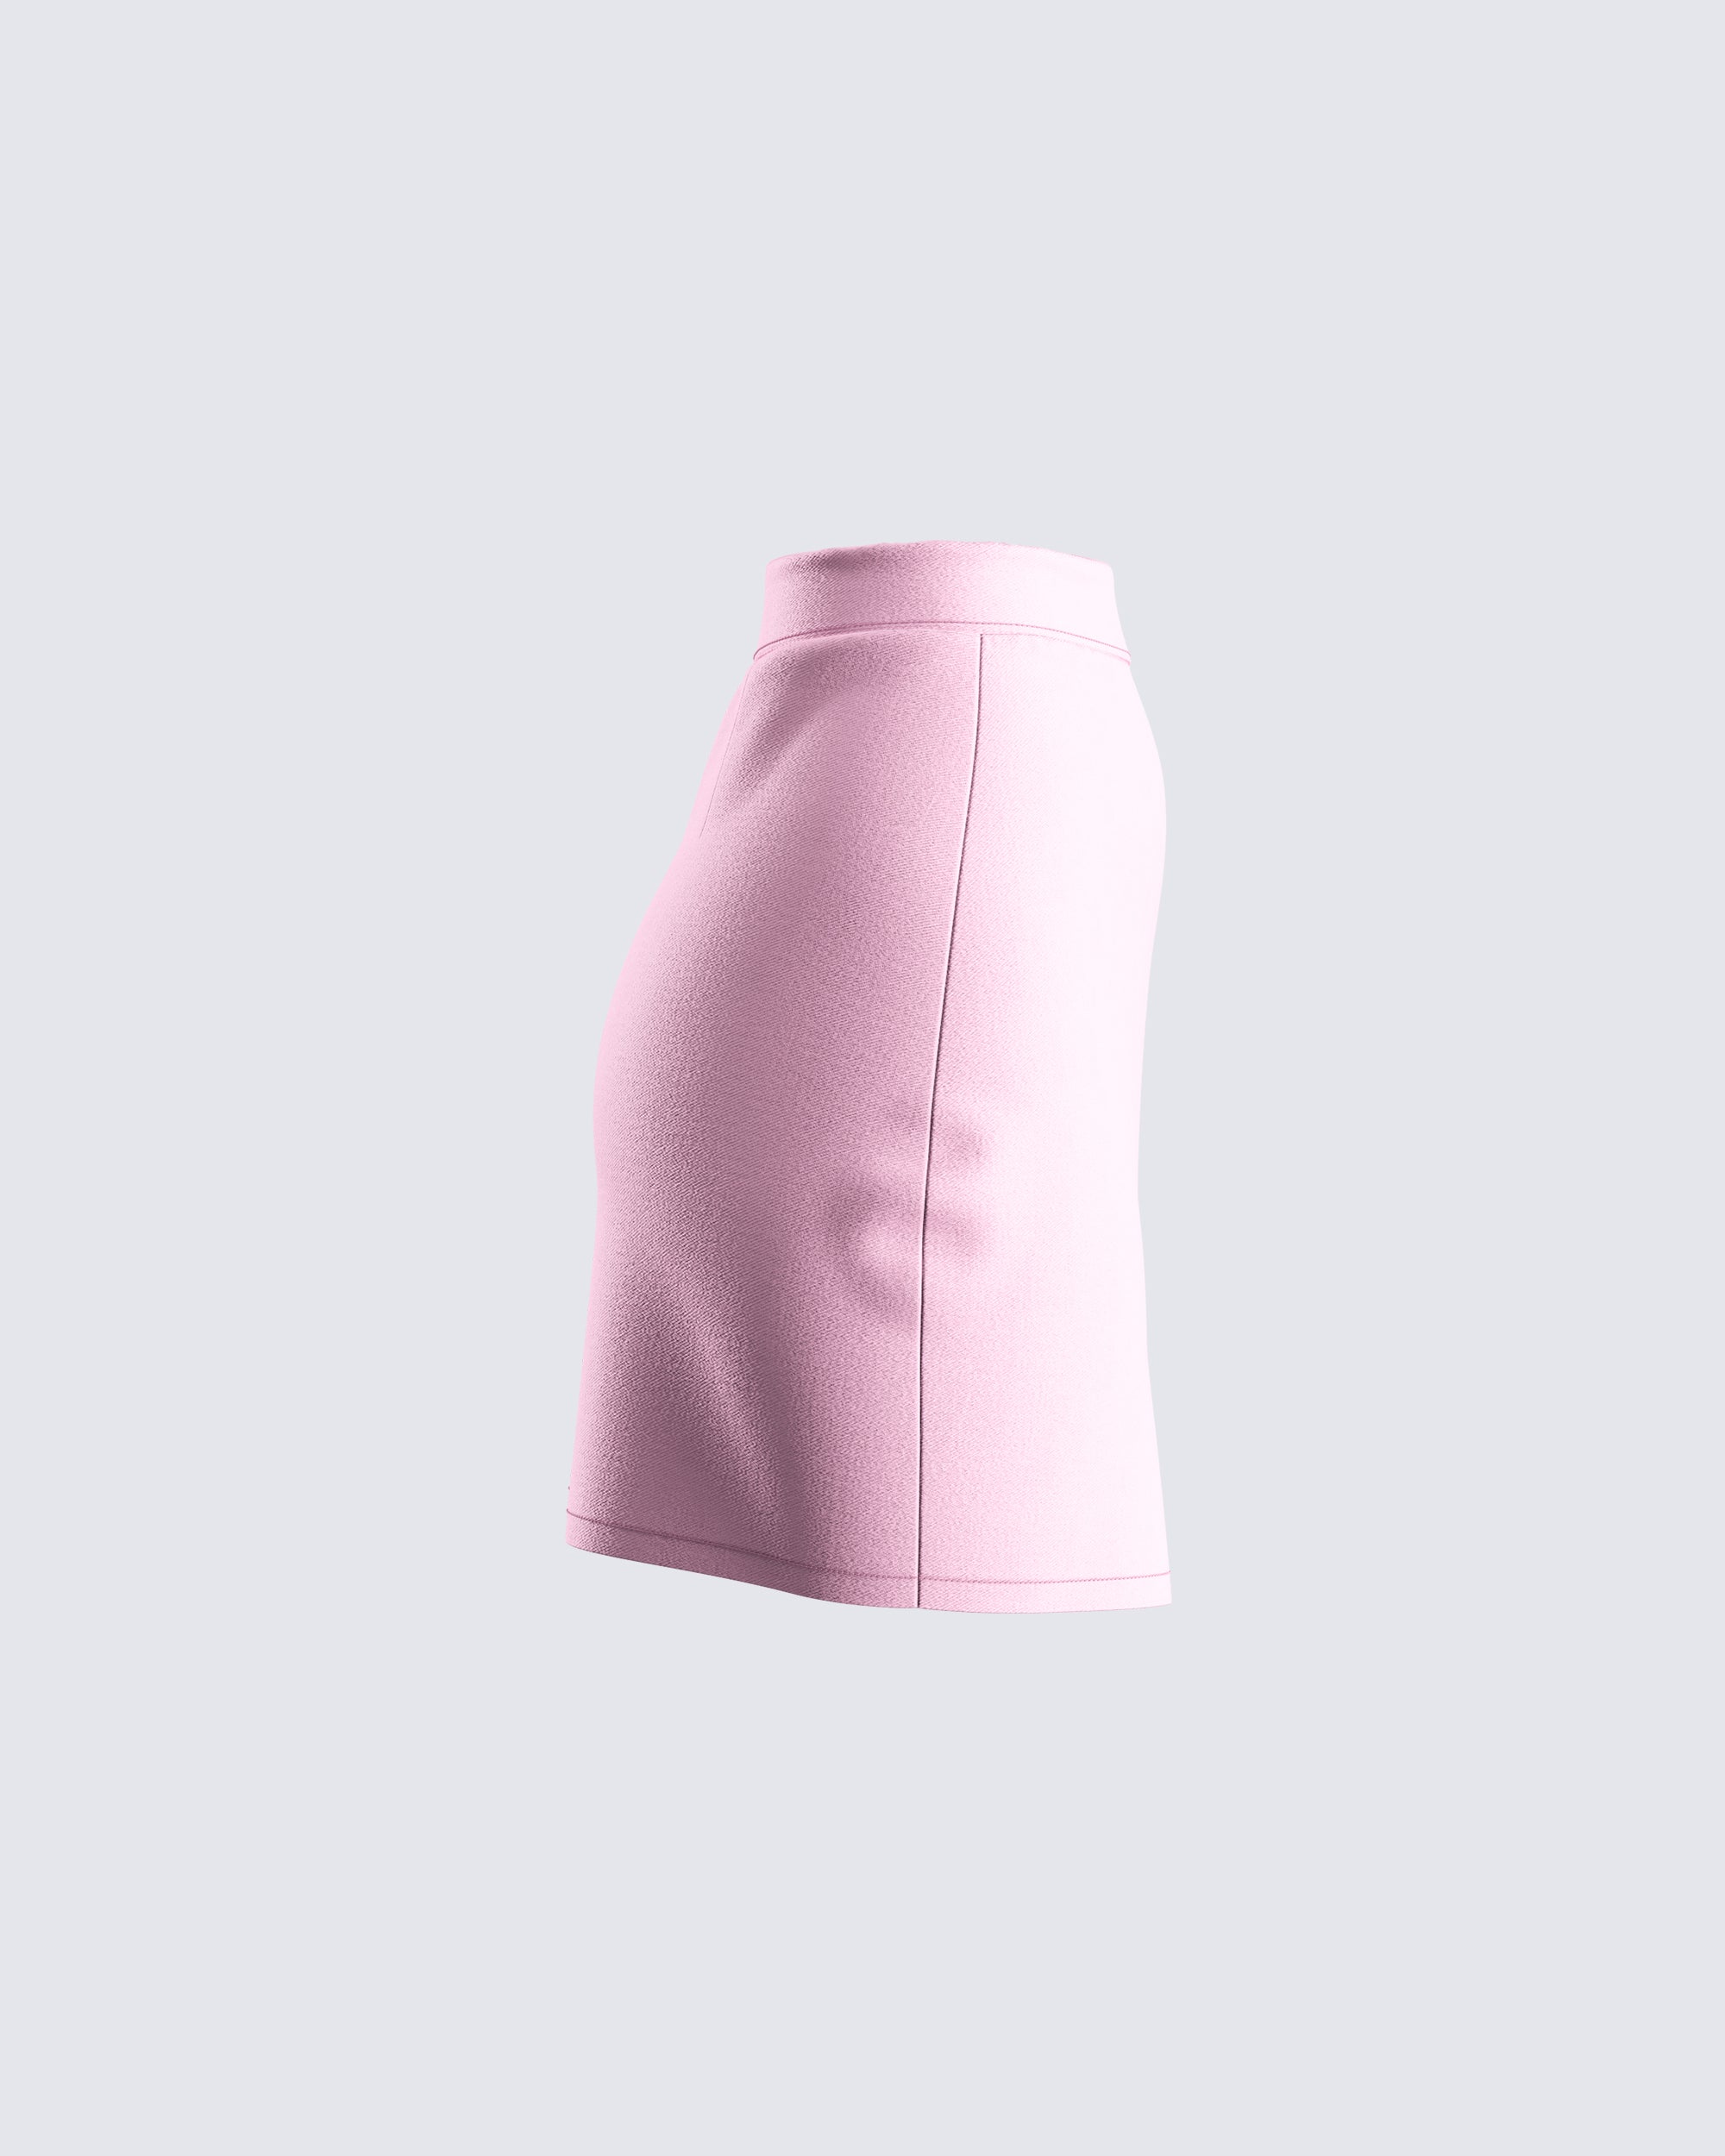 DanceeMangoo All-Match High Waist Pleated Skirts Woman Korean Style Pink  Black Mini Skirt Women Spring Summer Student Short JK Skirt - Walmart.com